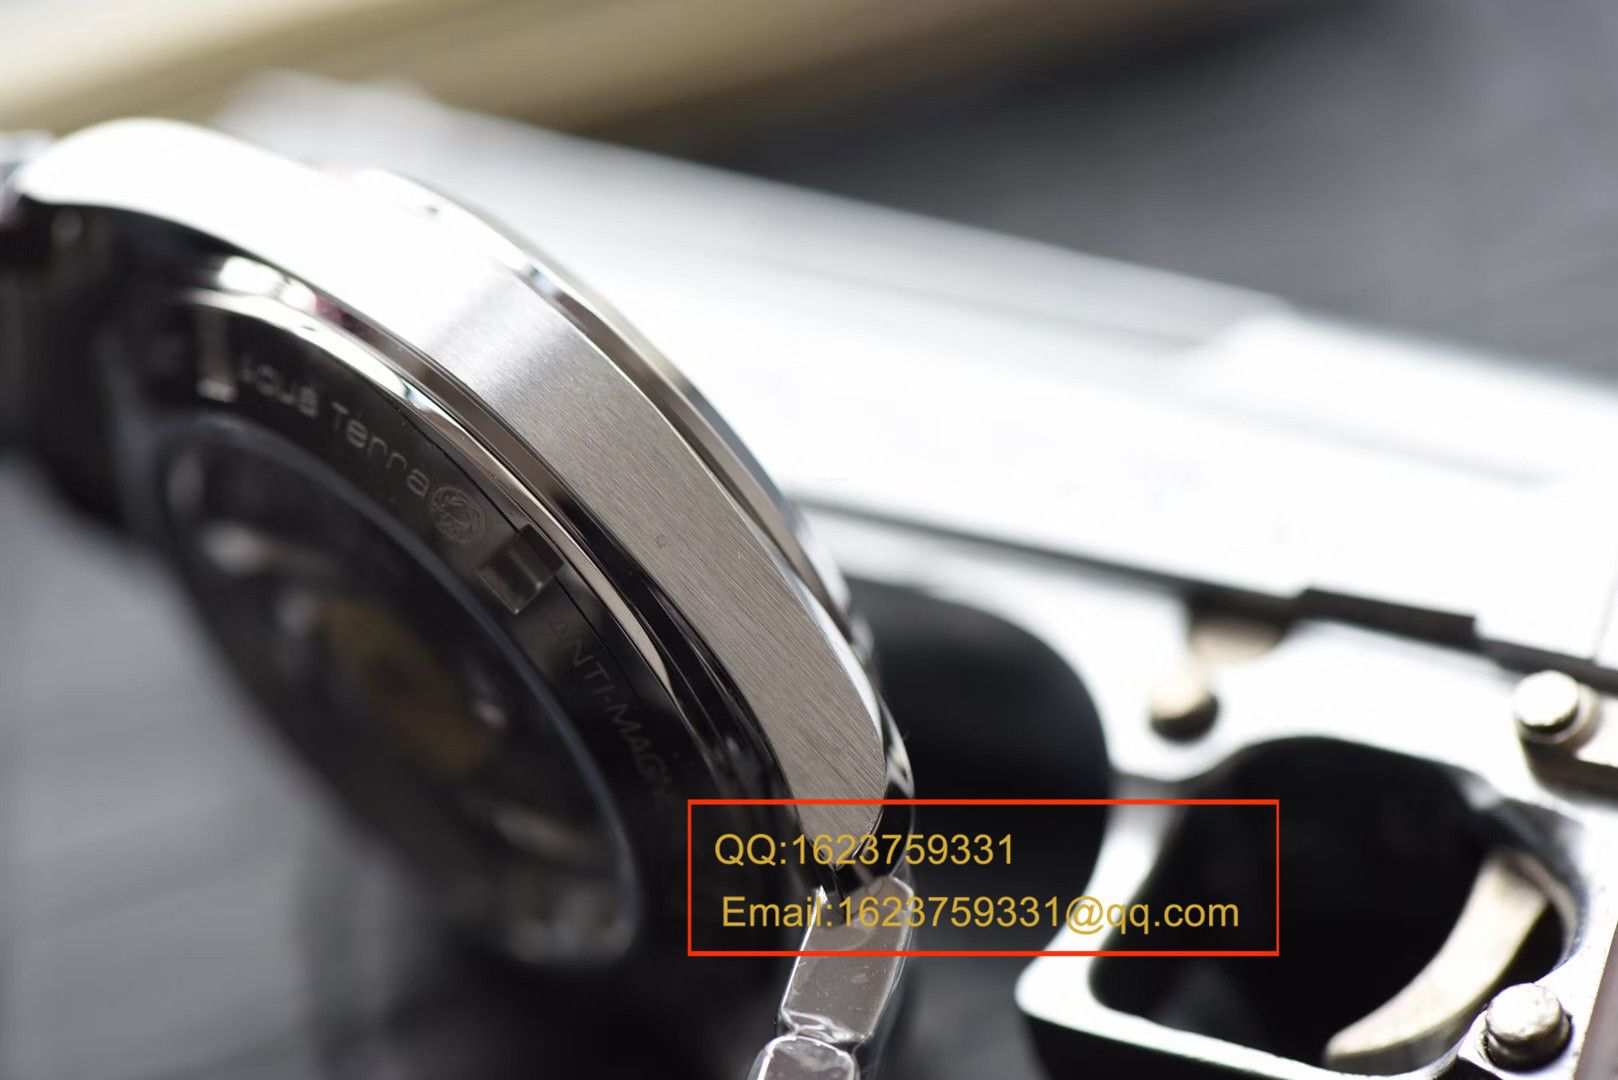 【KW一比一超A高仿手表】欧米茄海马系列 007詹姆斯邦德限量版 231.10.42.21.03.004机械腕表 / MAF142